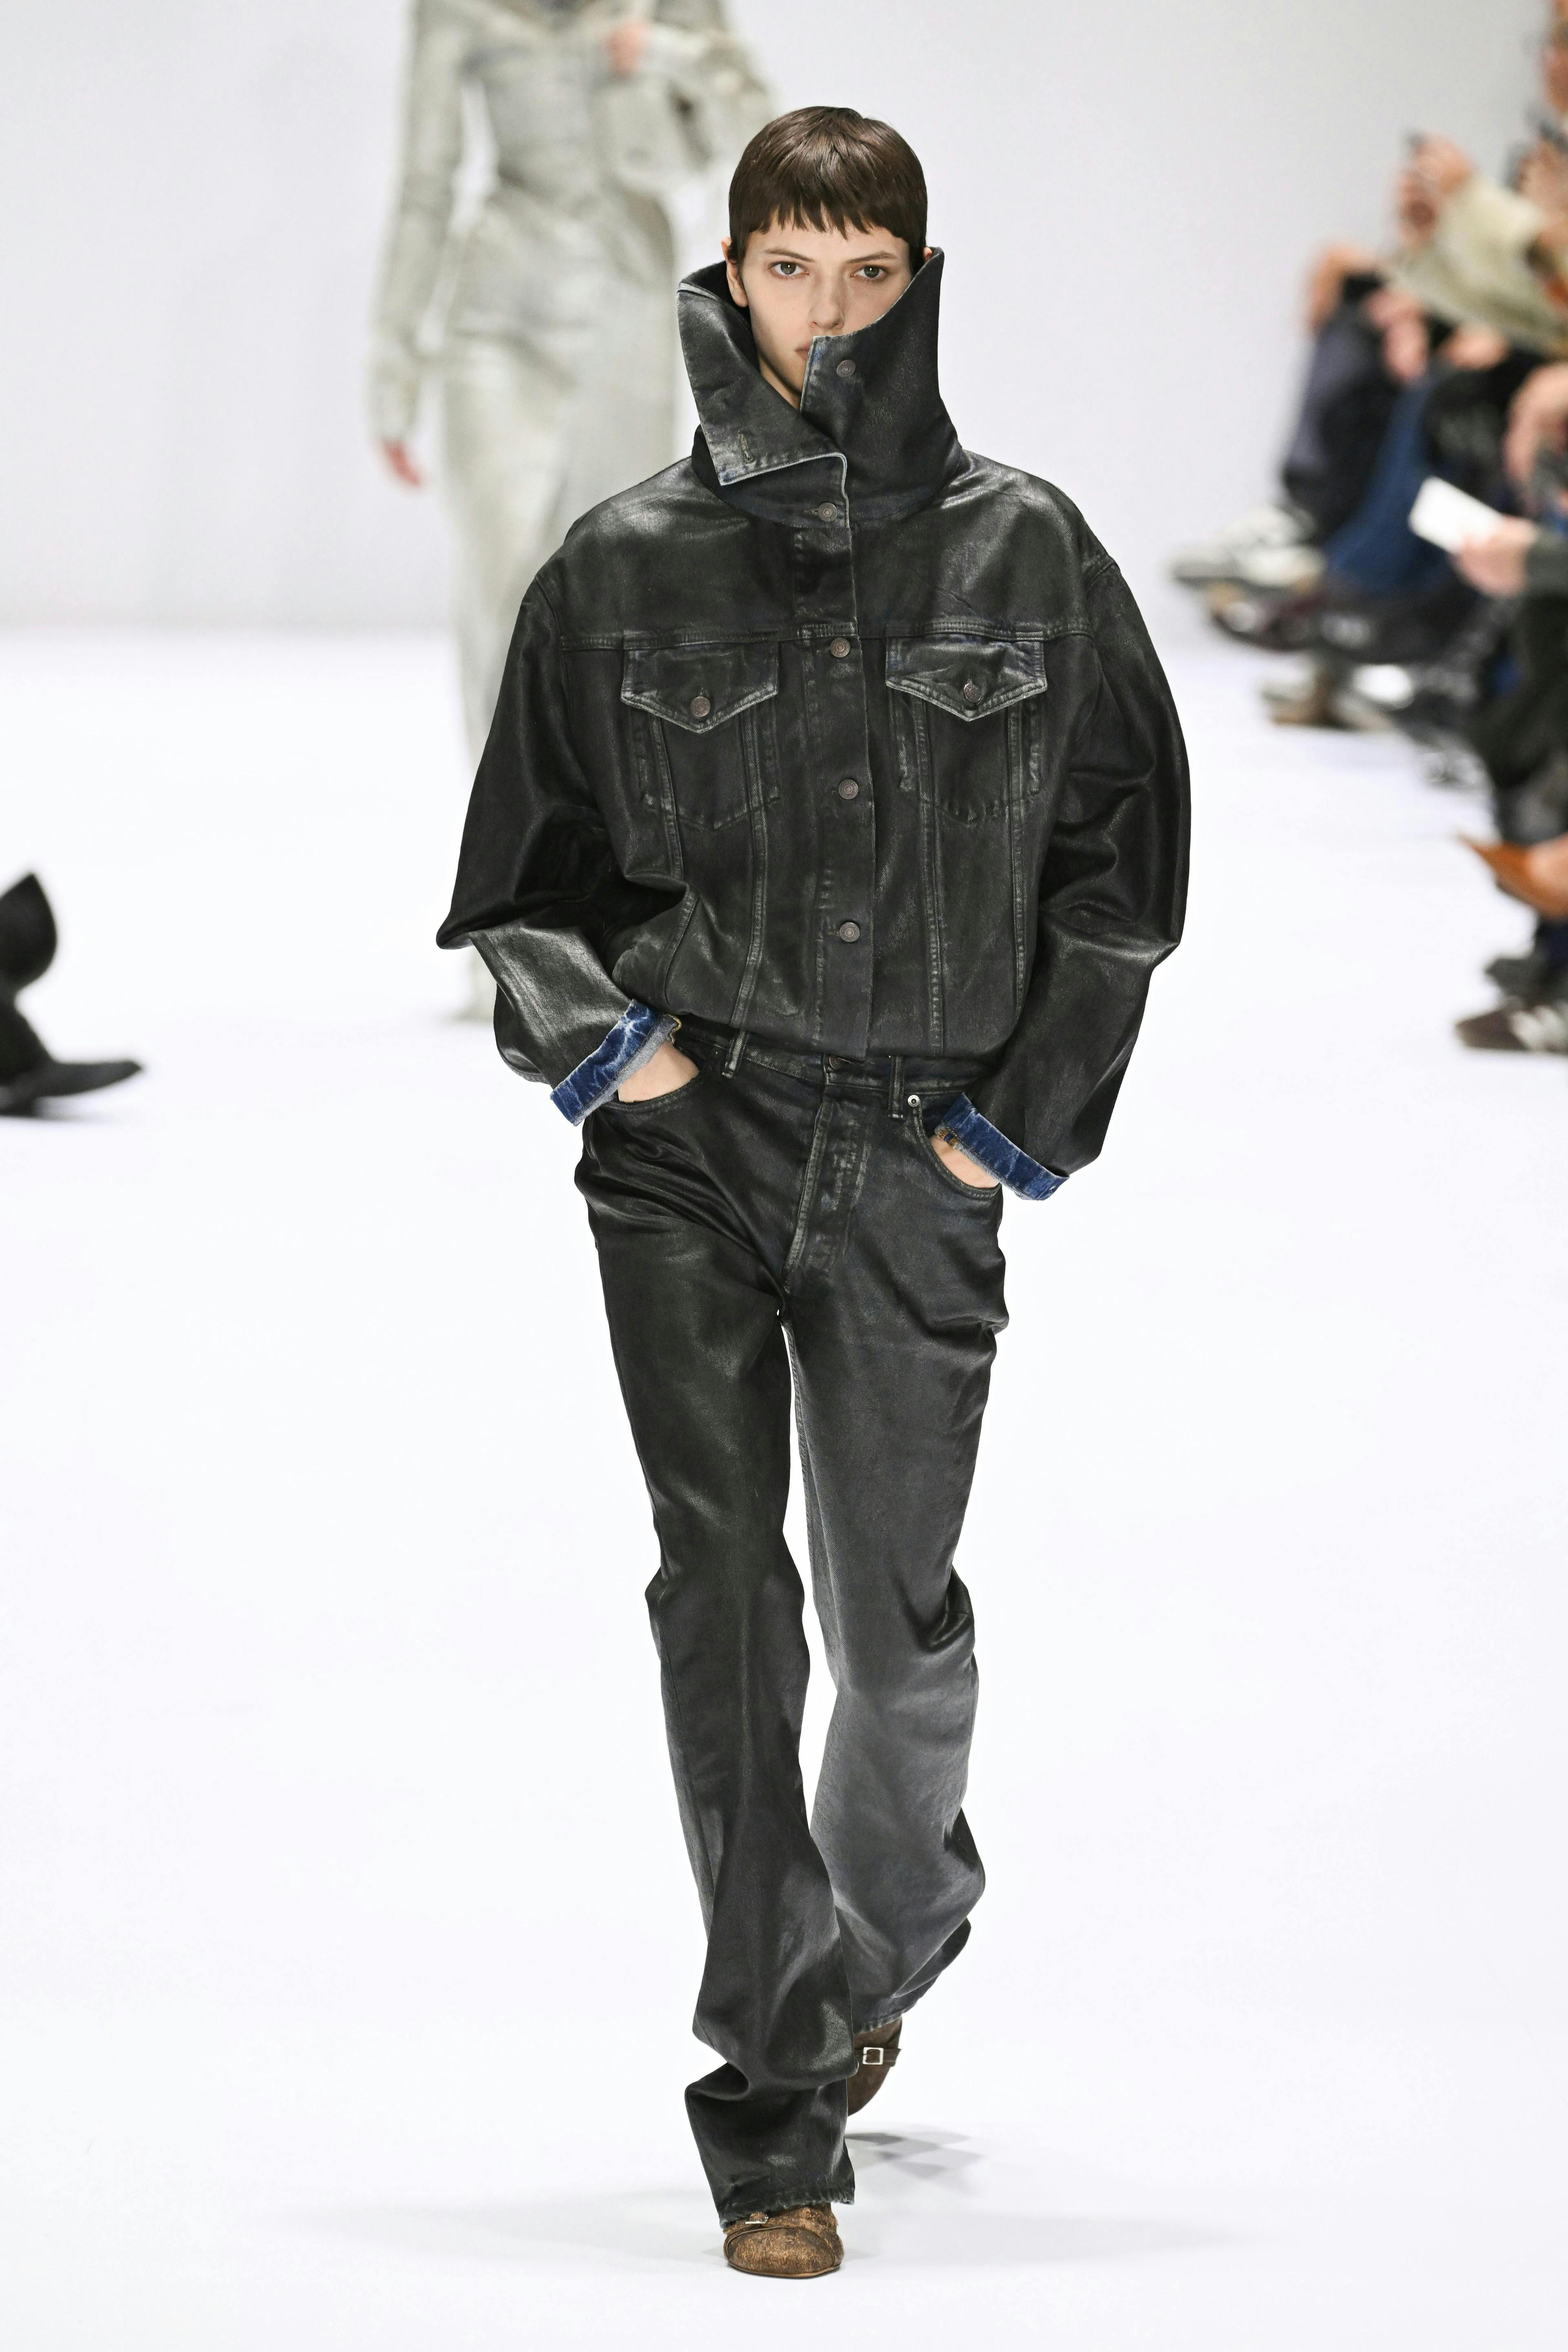 paris fashion coat jacket long sleeve adult male man person shoe jeans